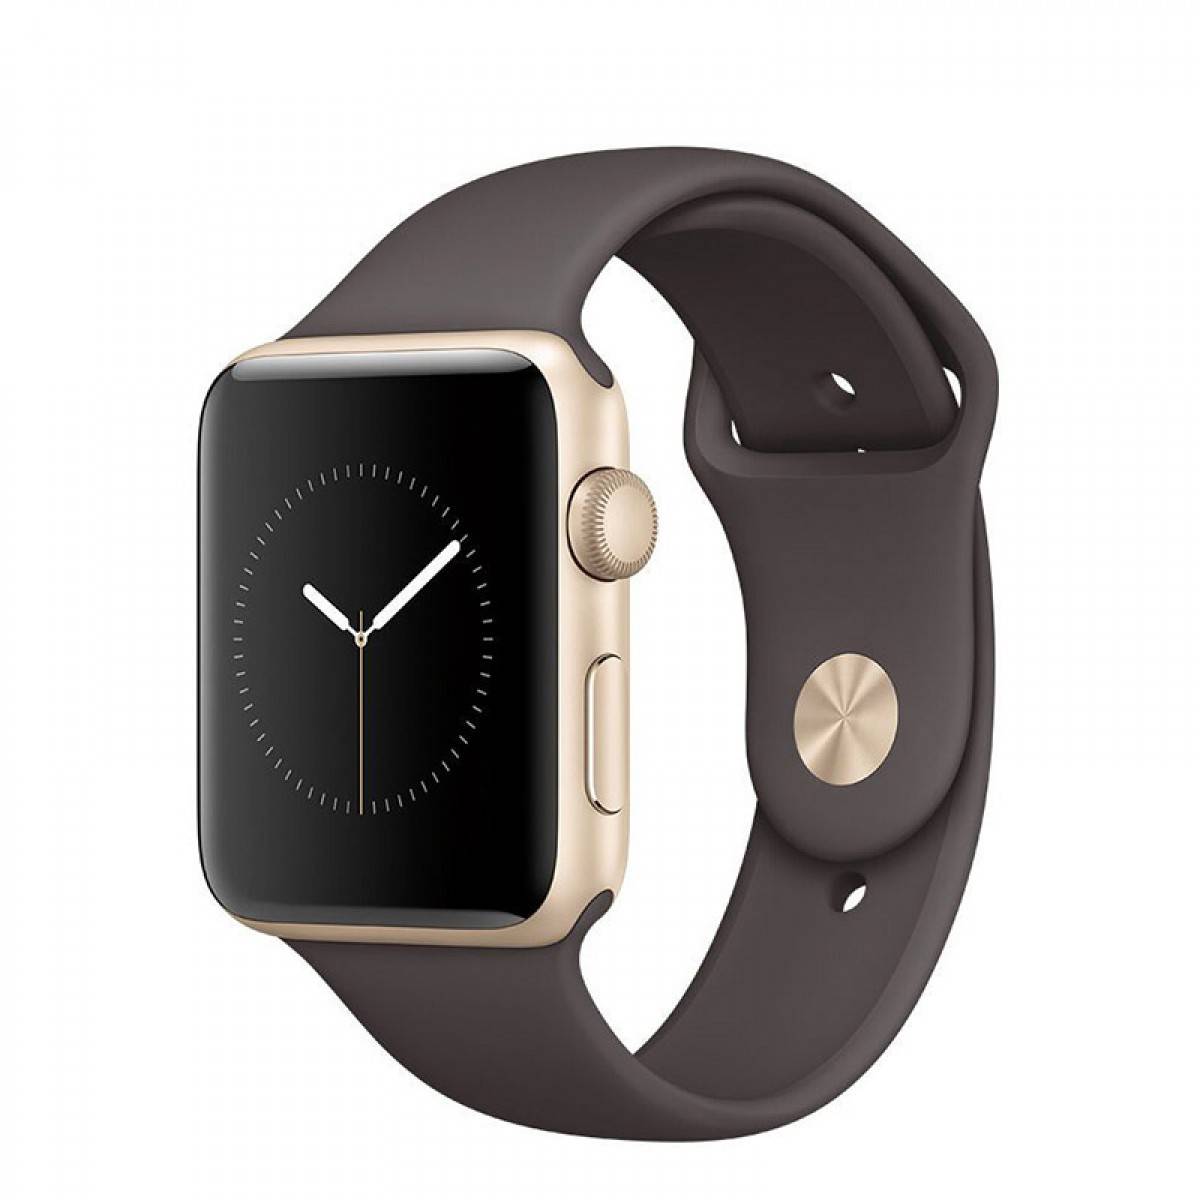 匡威Apple/苹果 Apple Watch Series 2 智能手表42mm